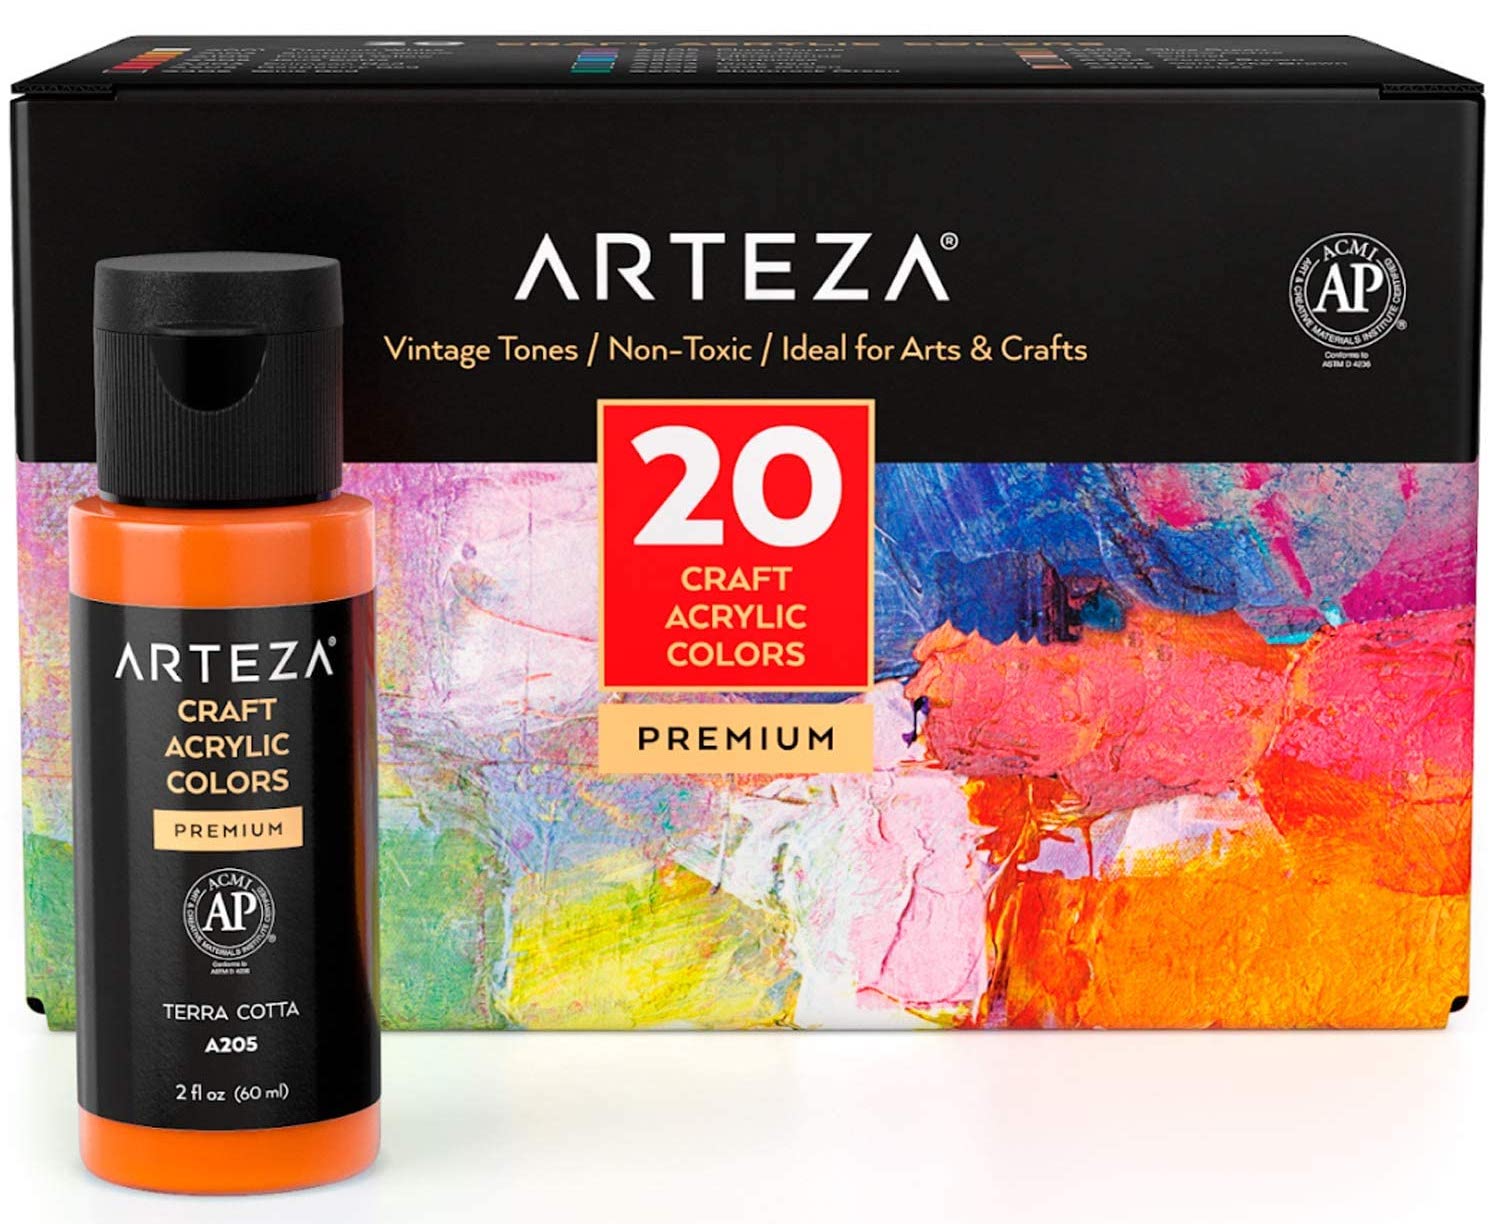 Box of Arteza craft paint